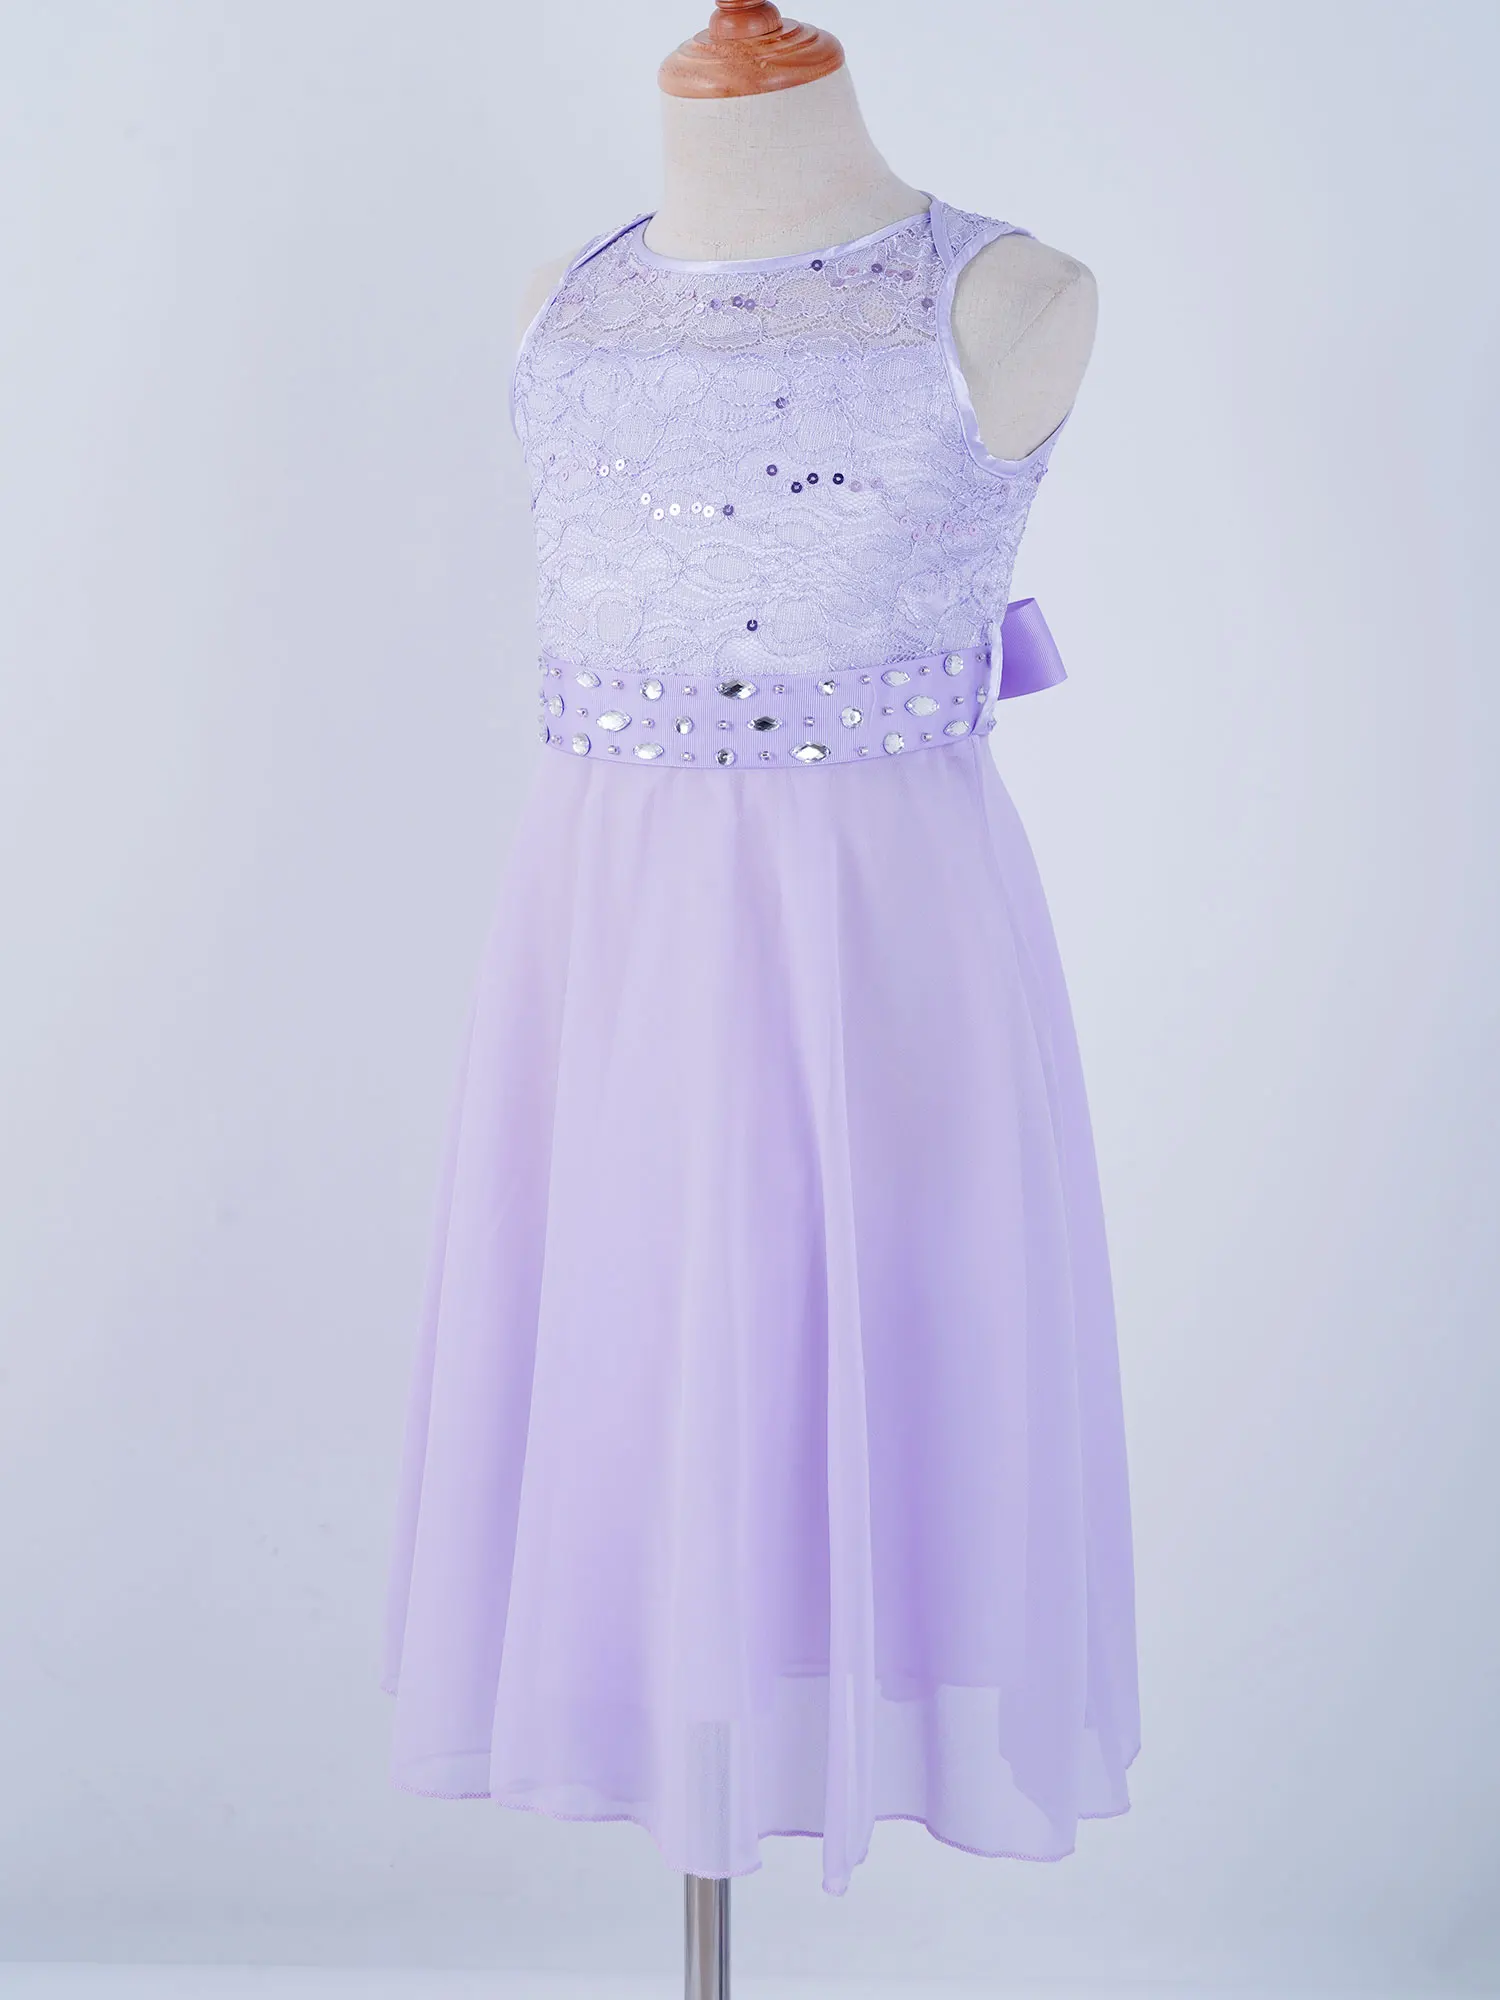 Çocuklar Elbise Küçük gelinlik modelleri Sequins Prenses Dantel Çiçek Kız Elbise Kız Pageant Elbise Düğün Parti Resmi Elbise - 5